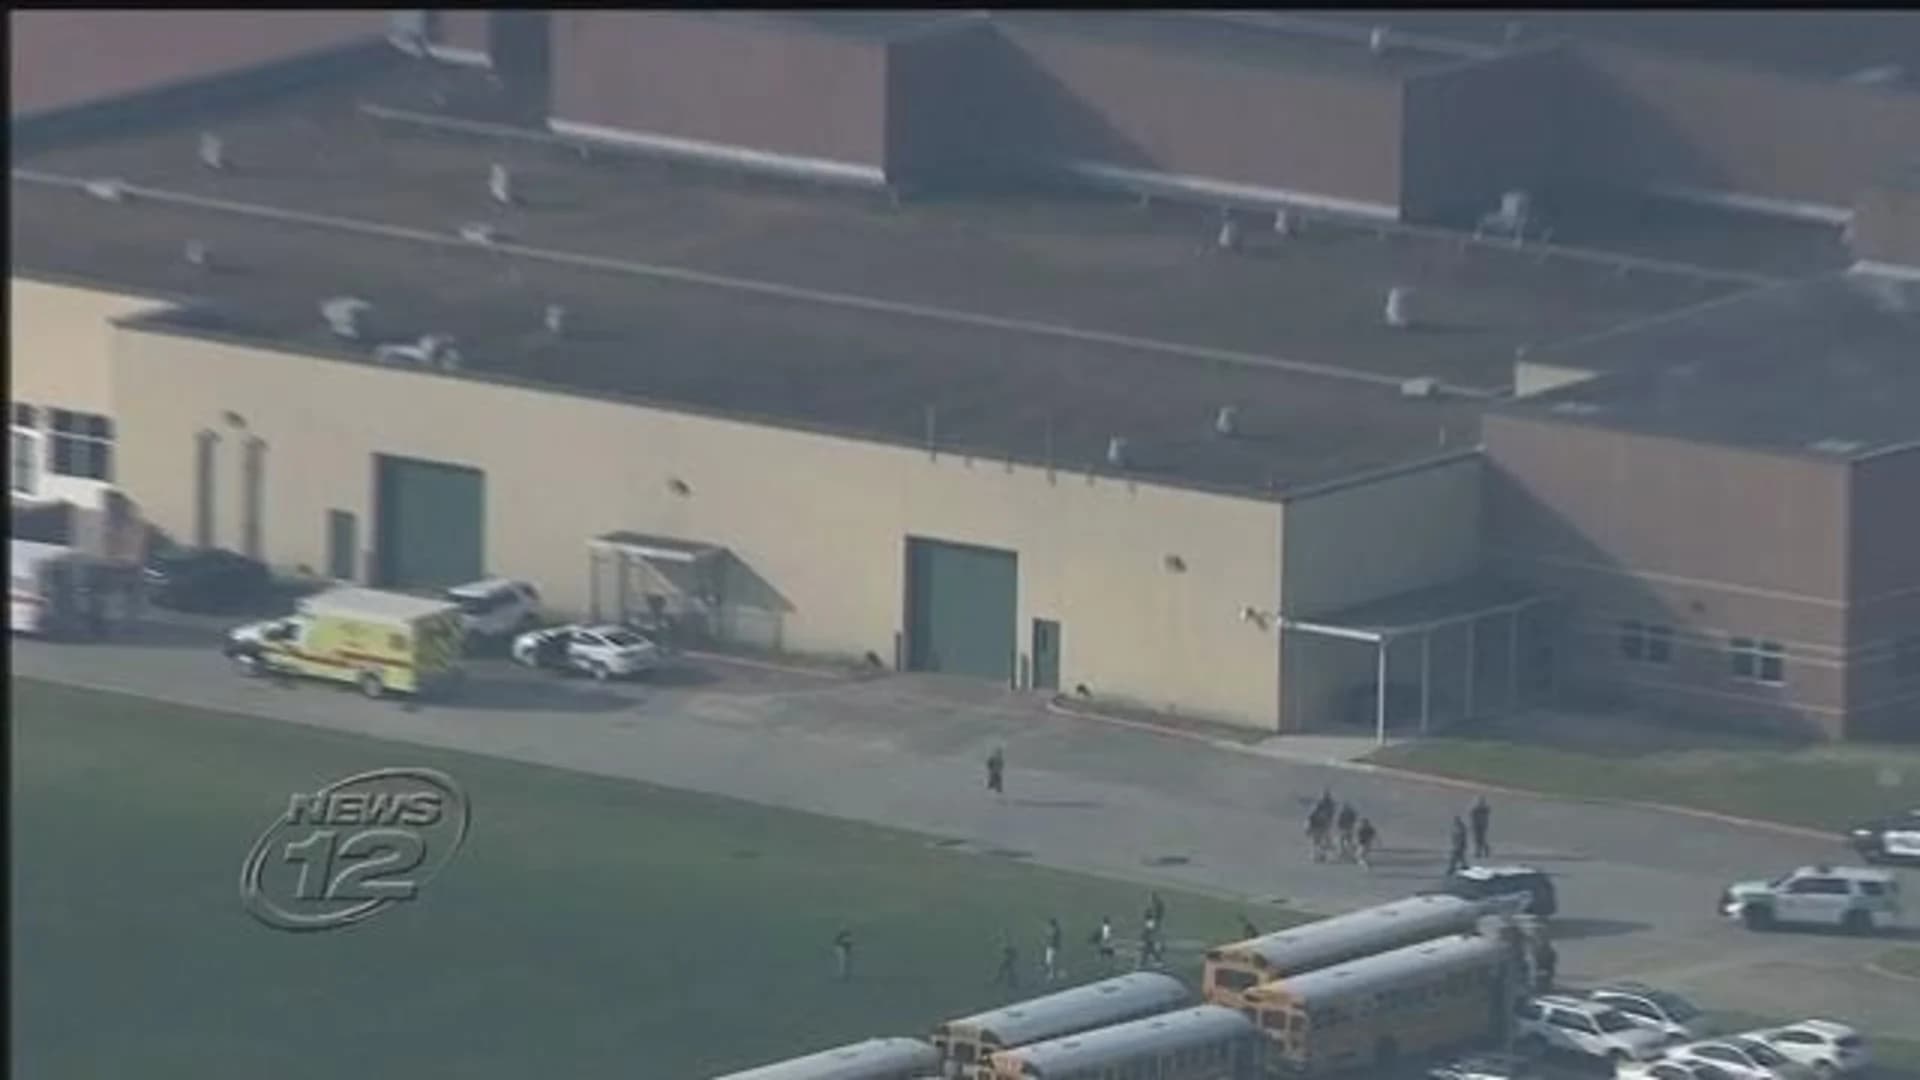 Gunman opens fire in Texas high school, killing 10 people